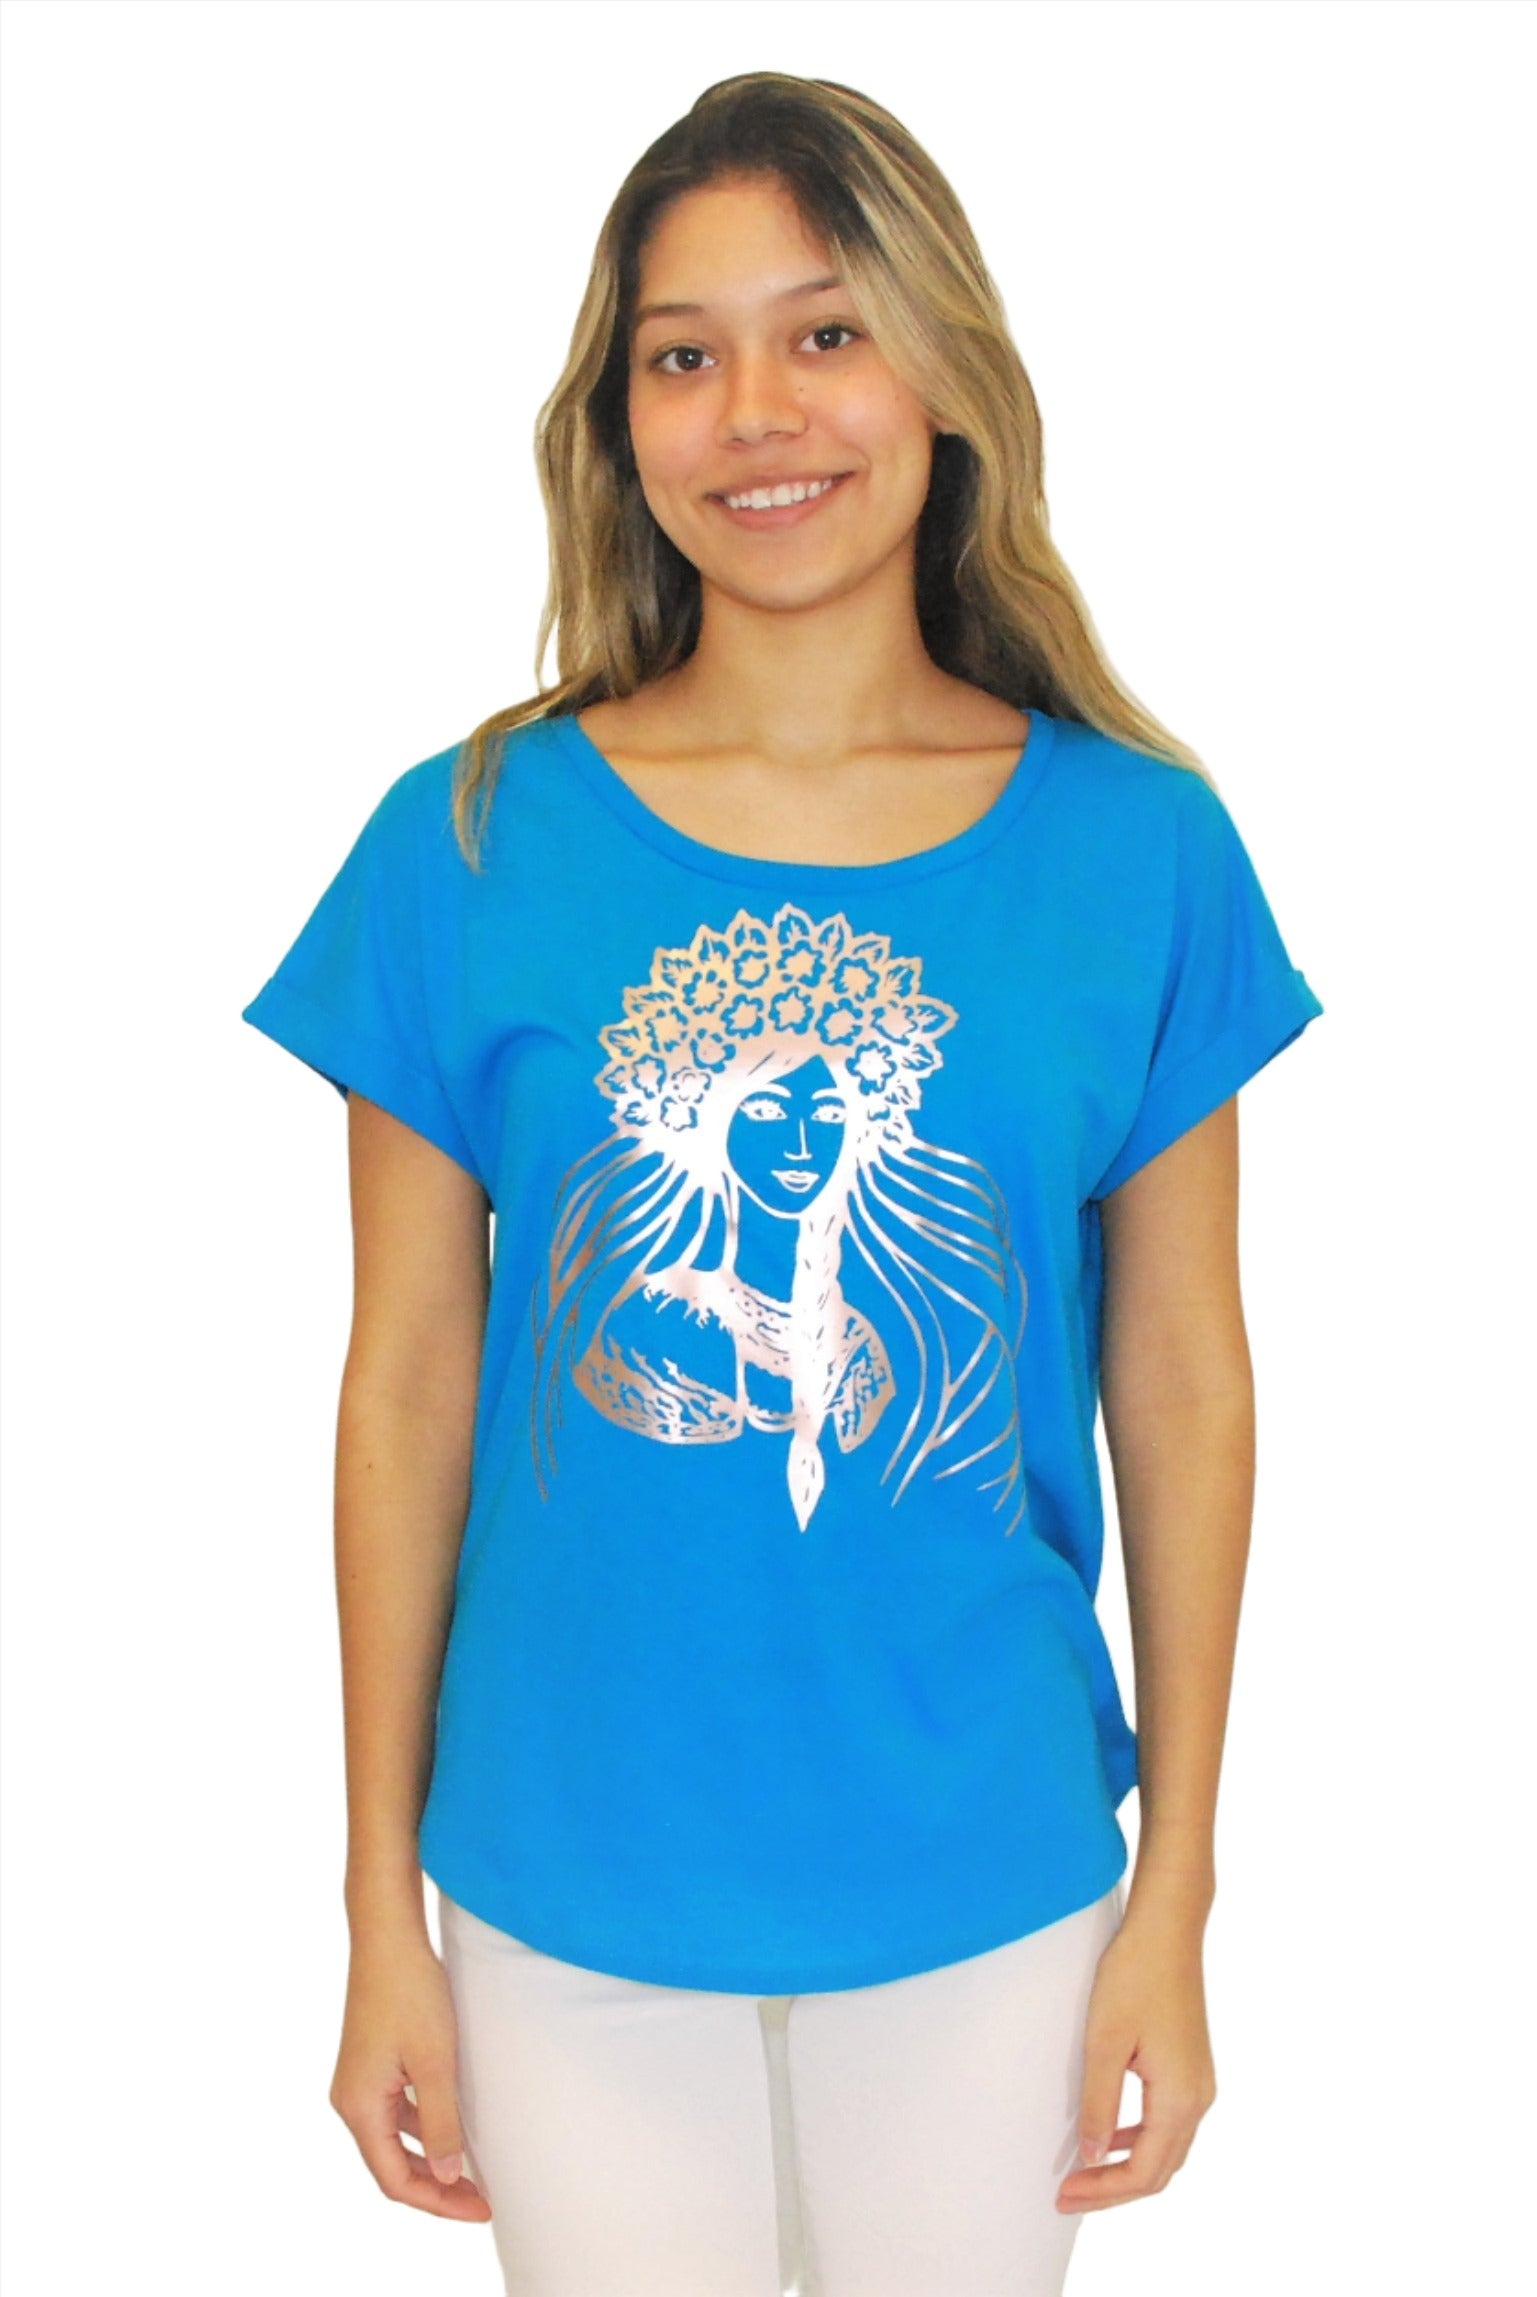 Ladies' Dolman shirt "Krasa" turquoise